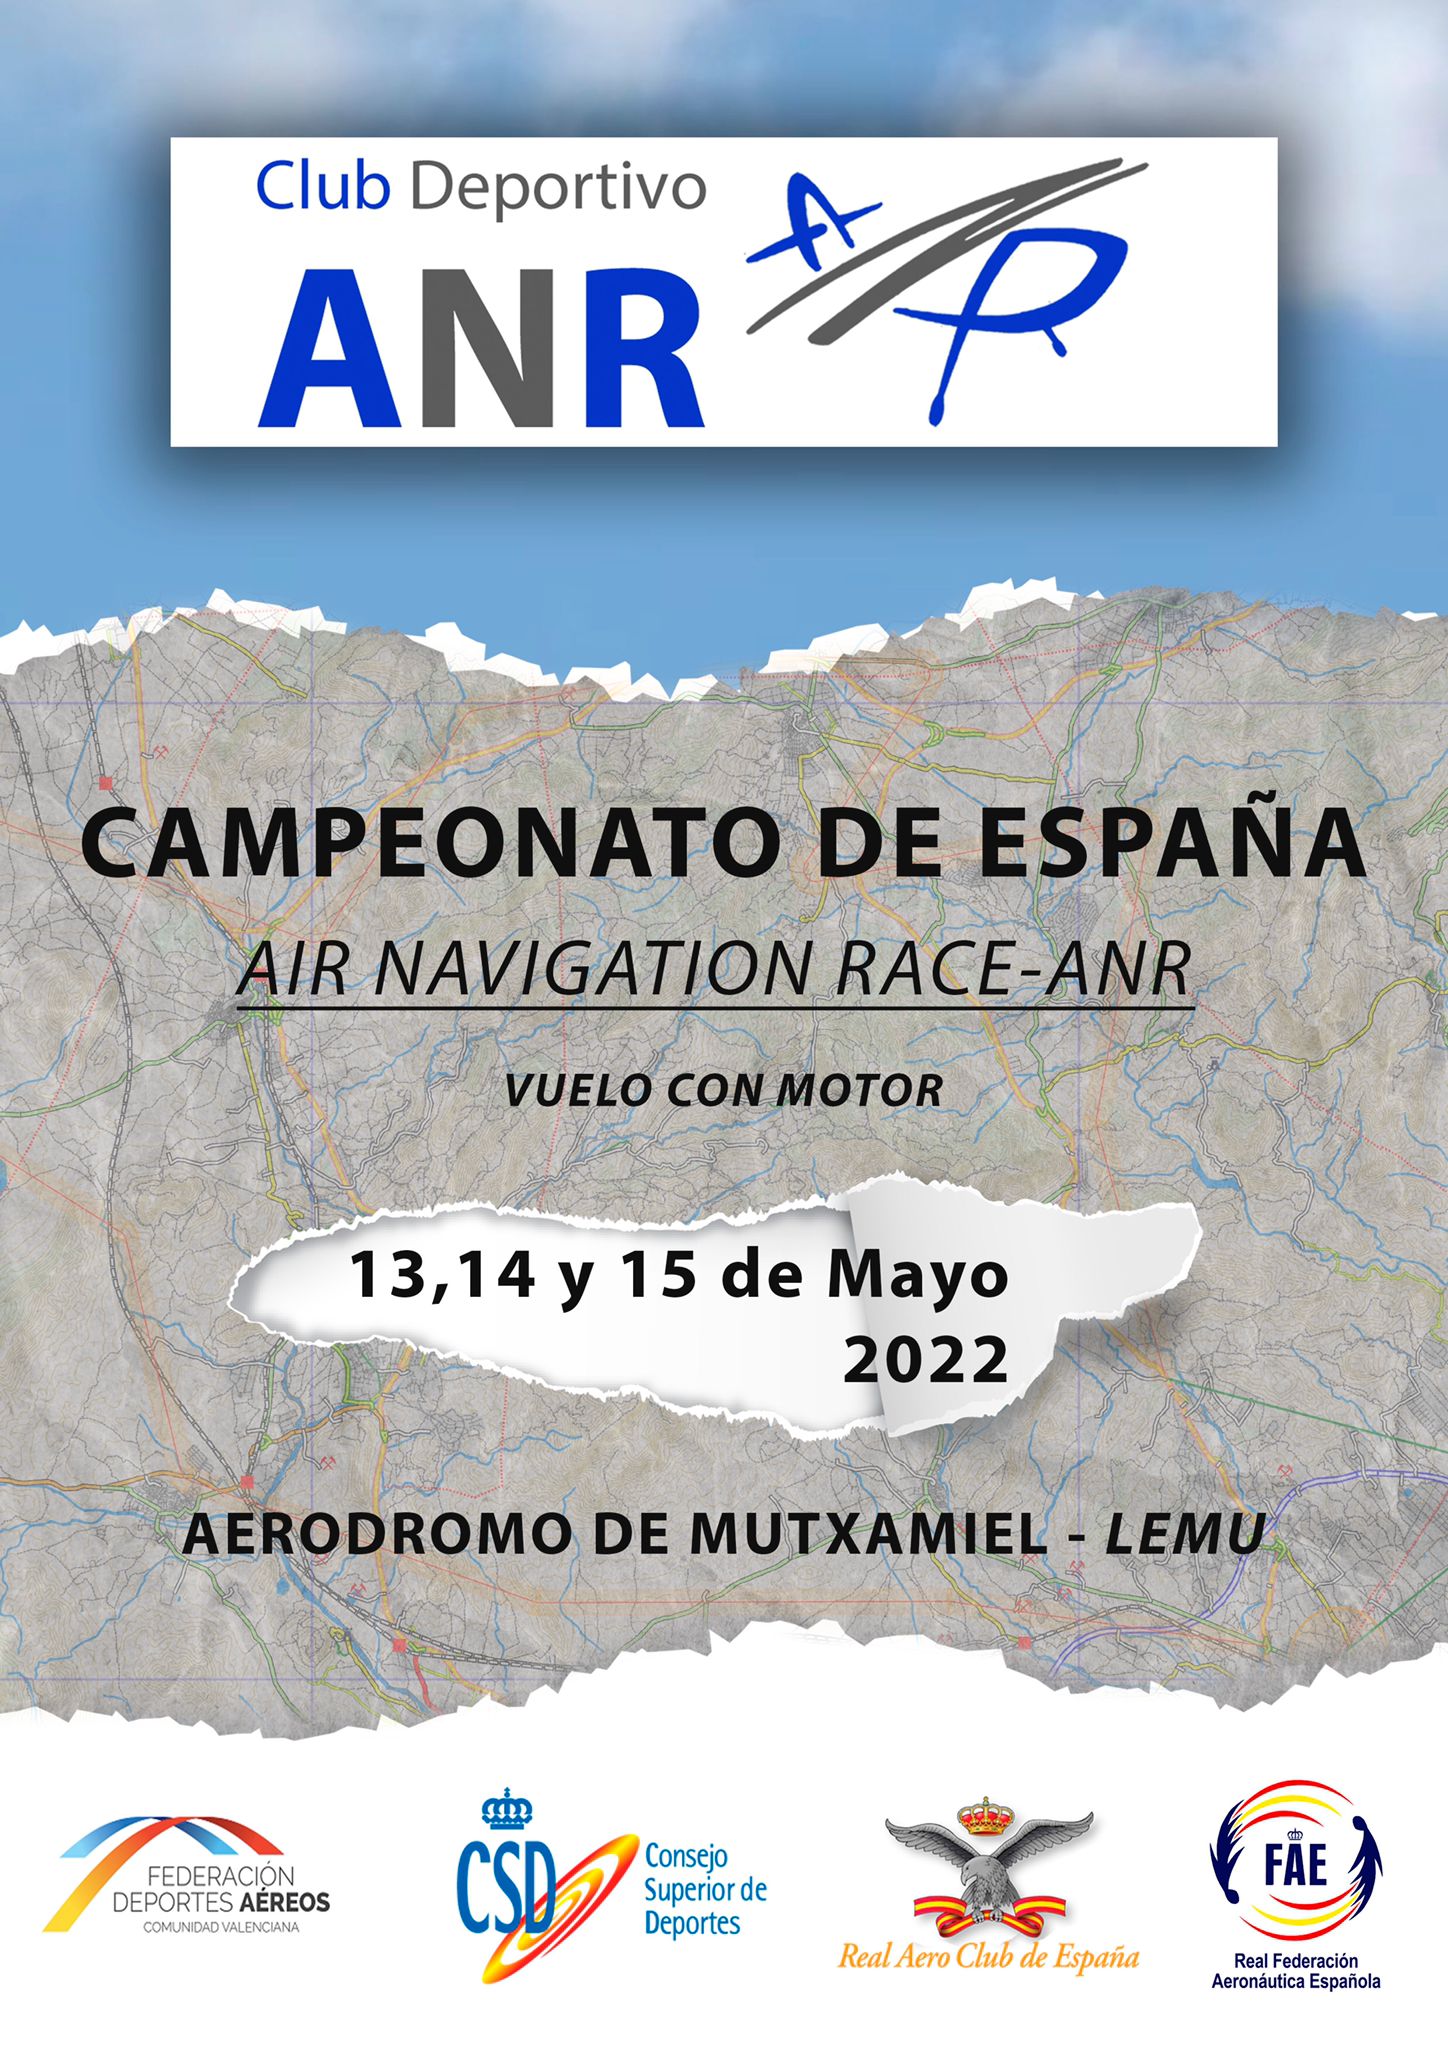 Campeonato de España de Air Navigation Race-ANR de Vuelo con Motor